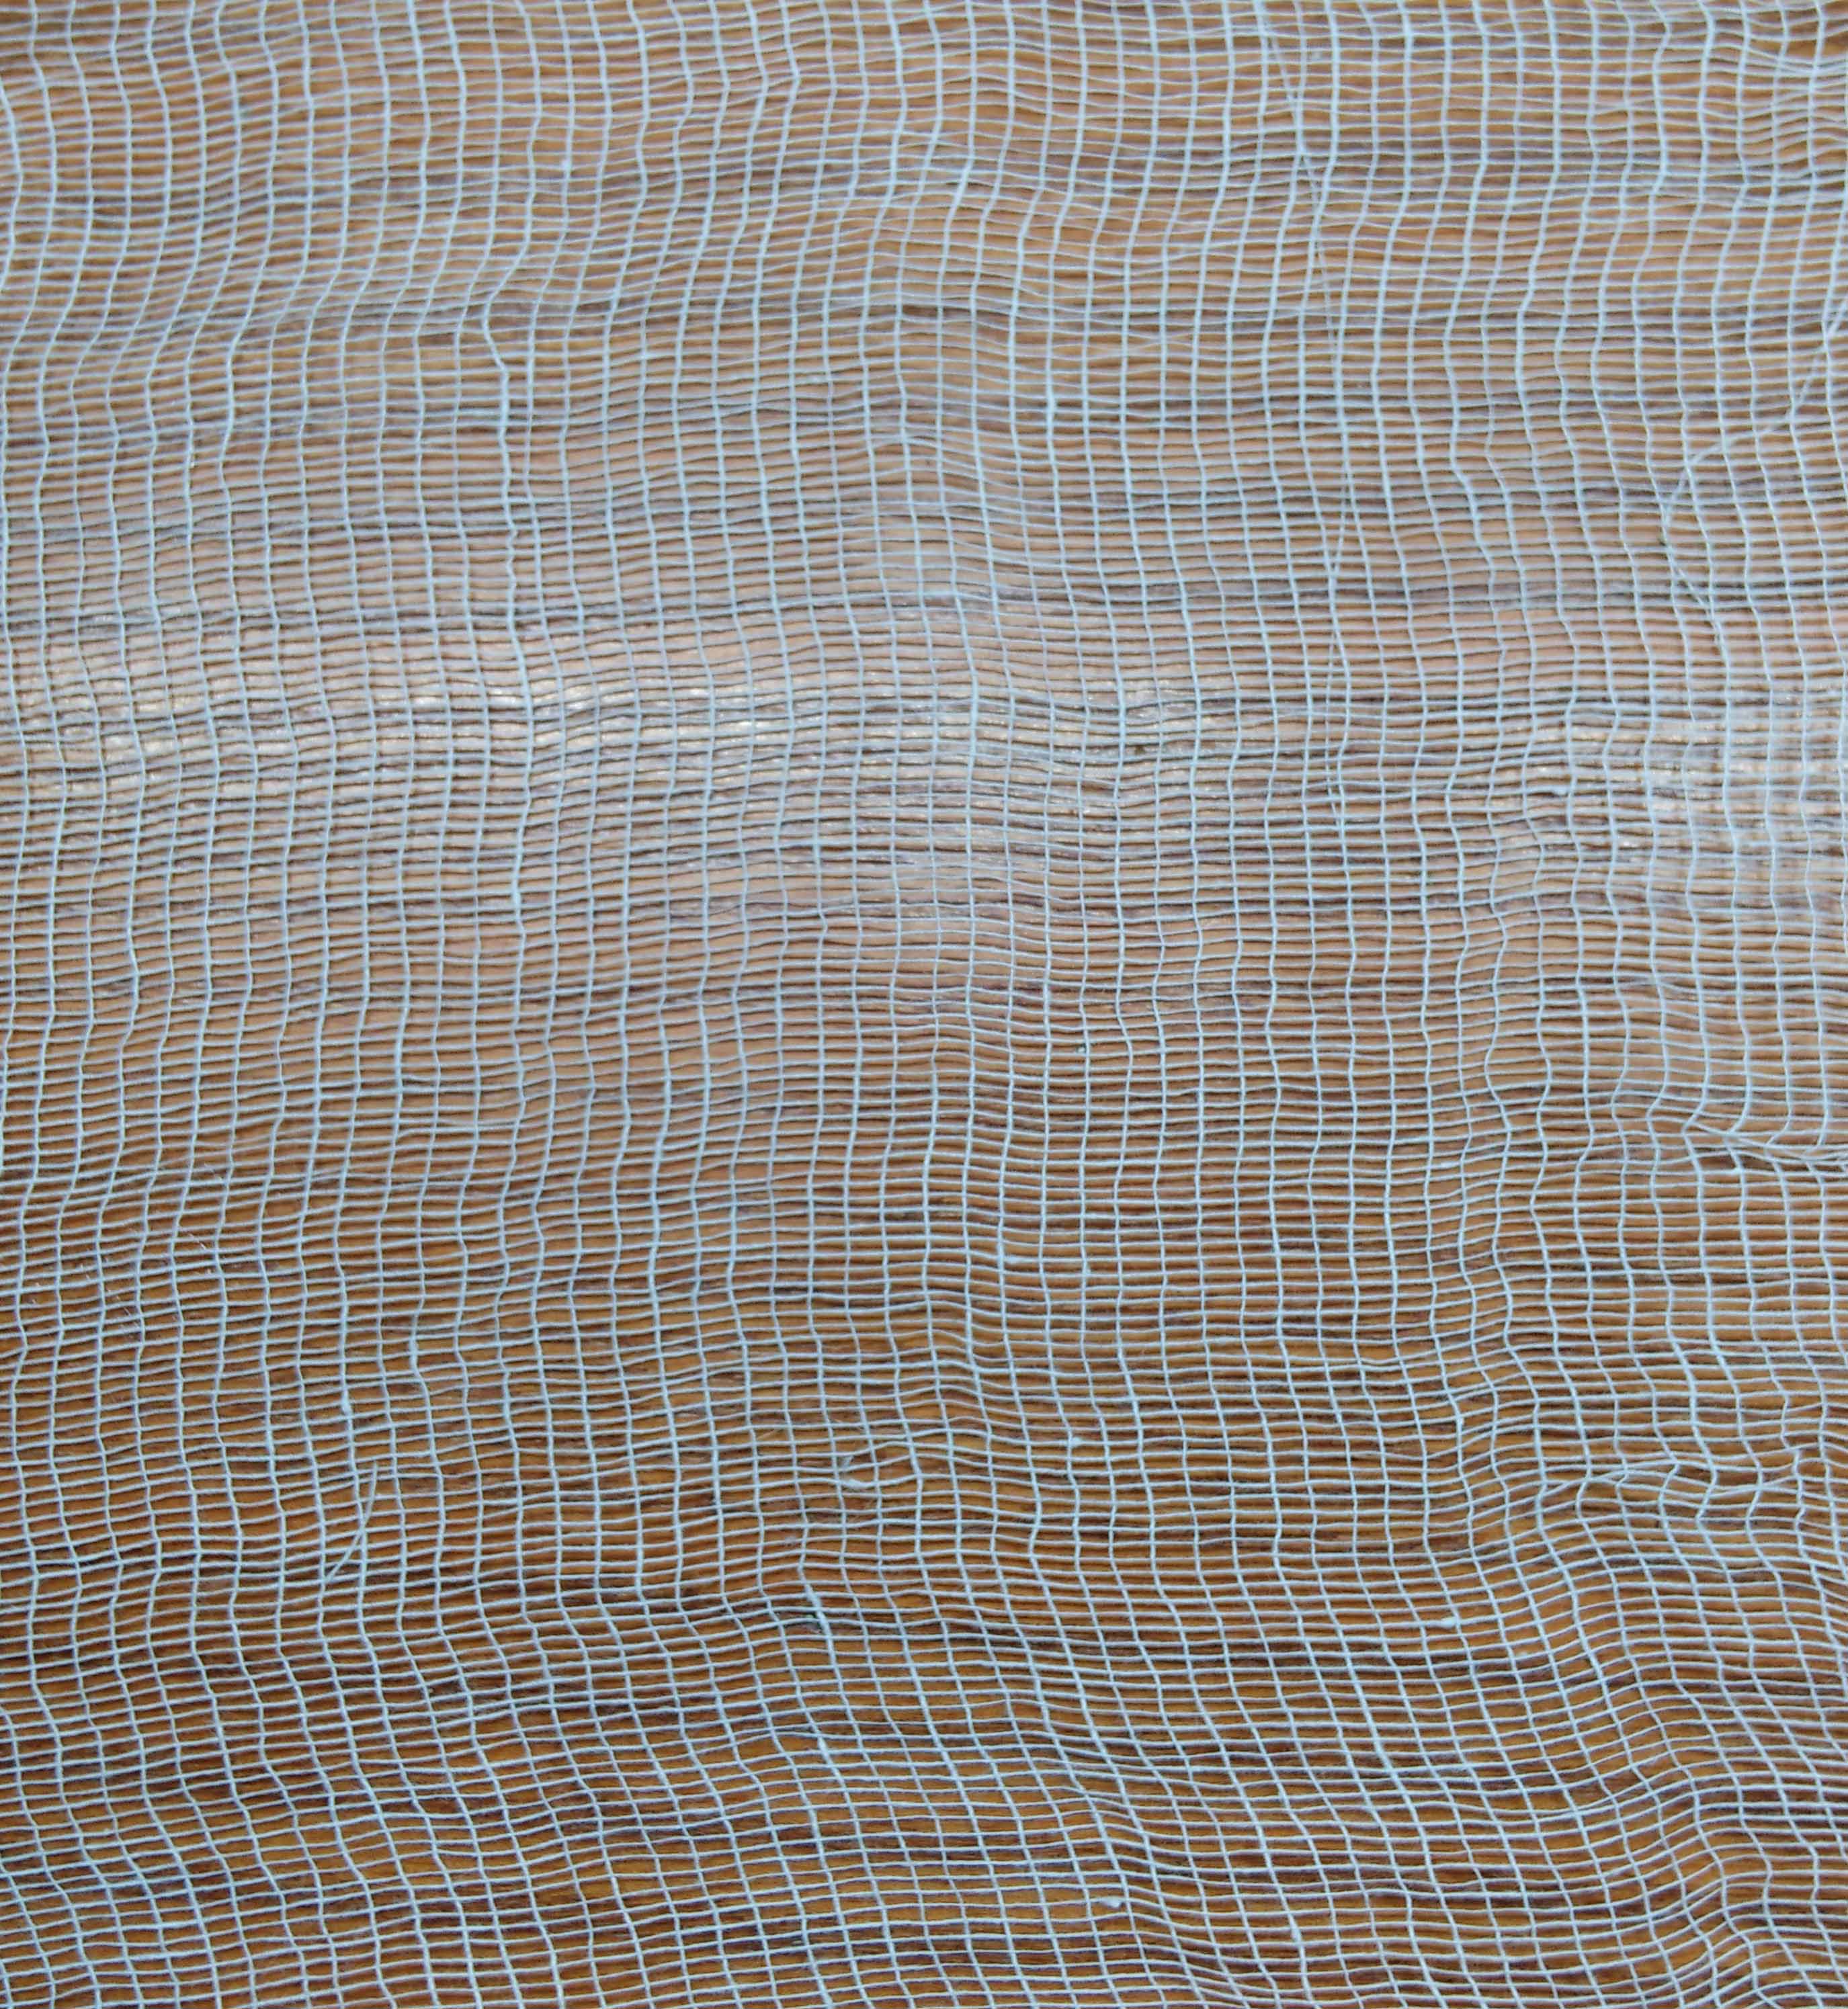 Базальтовая ткань — применение, характеристики и производство